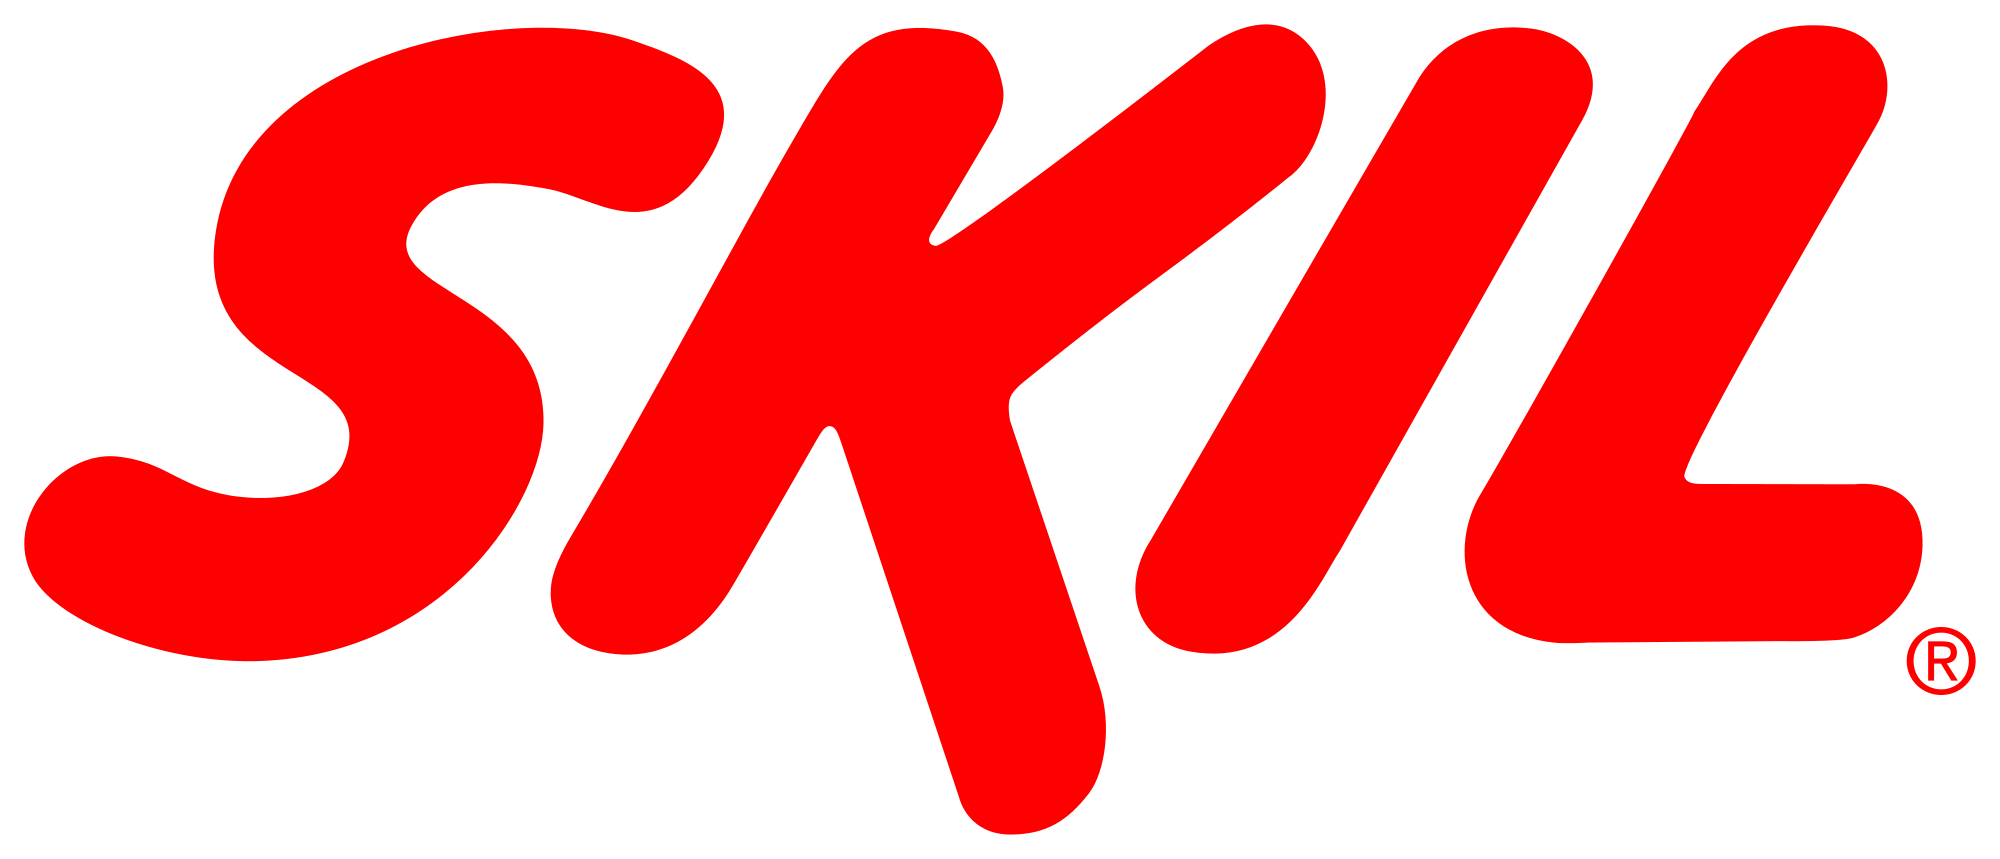 Skil_logo.svg